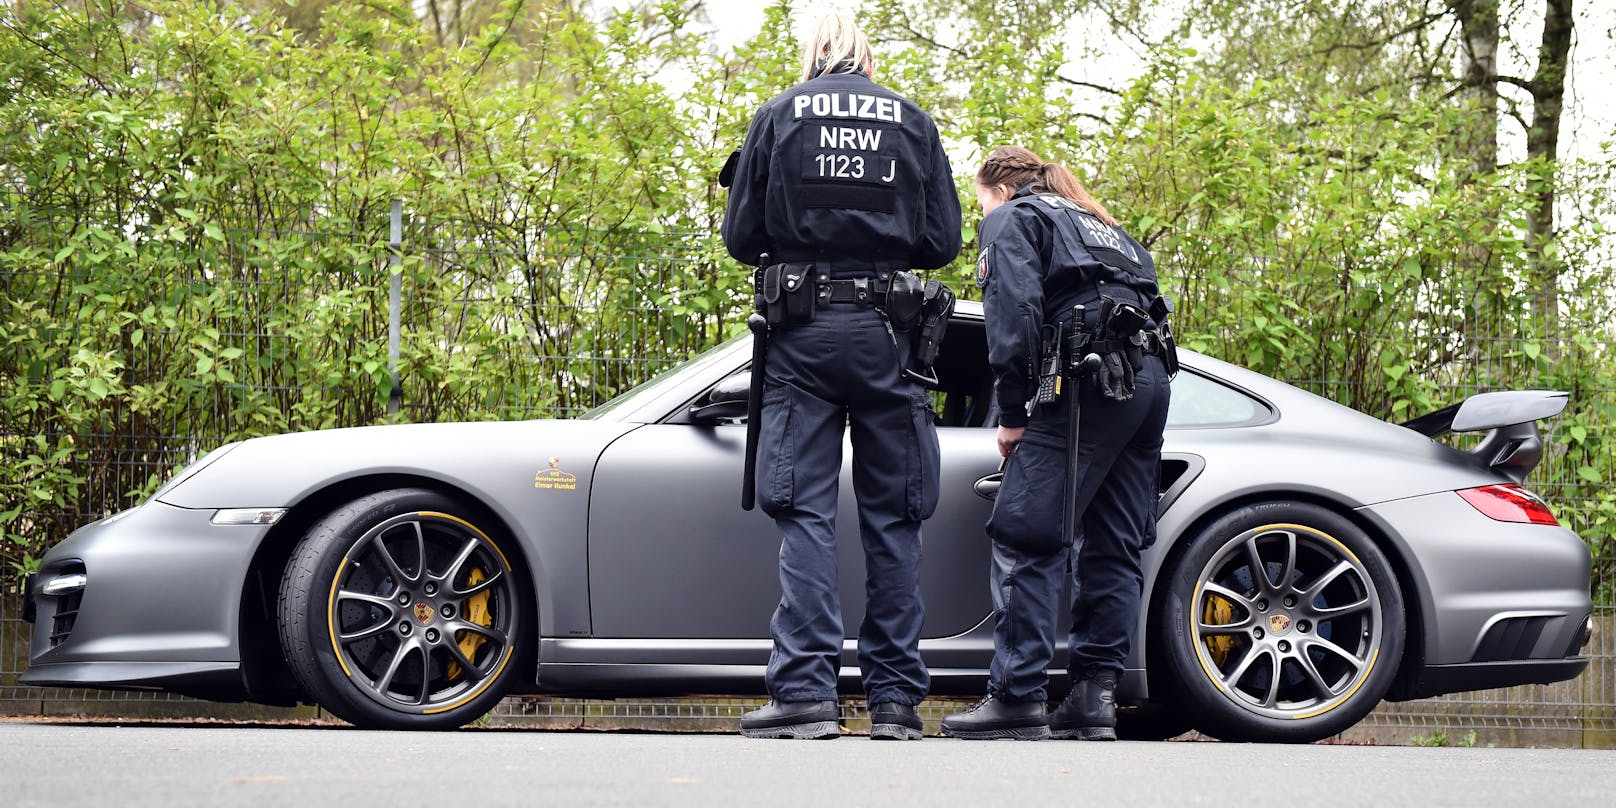 Der Porsche-Poser wurde von der Polizei angehalten.